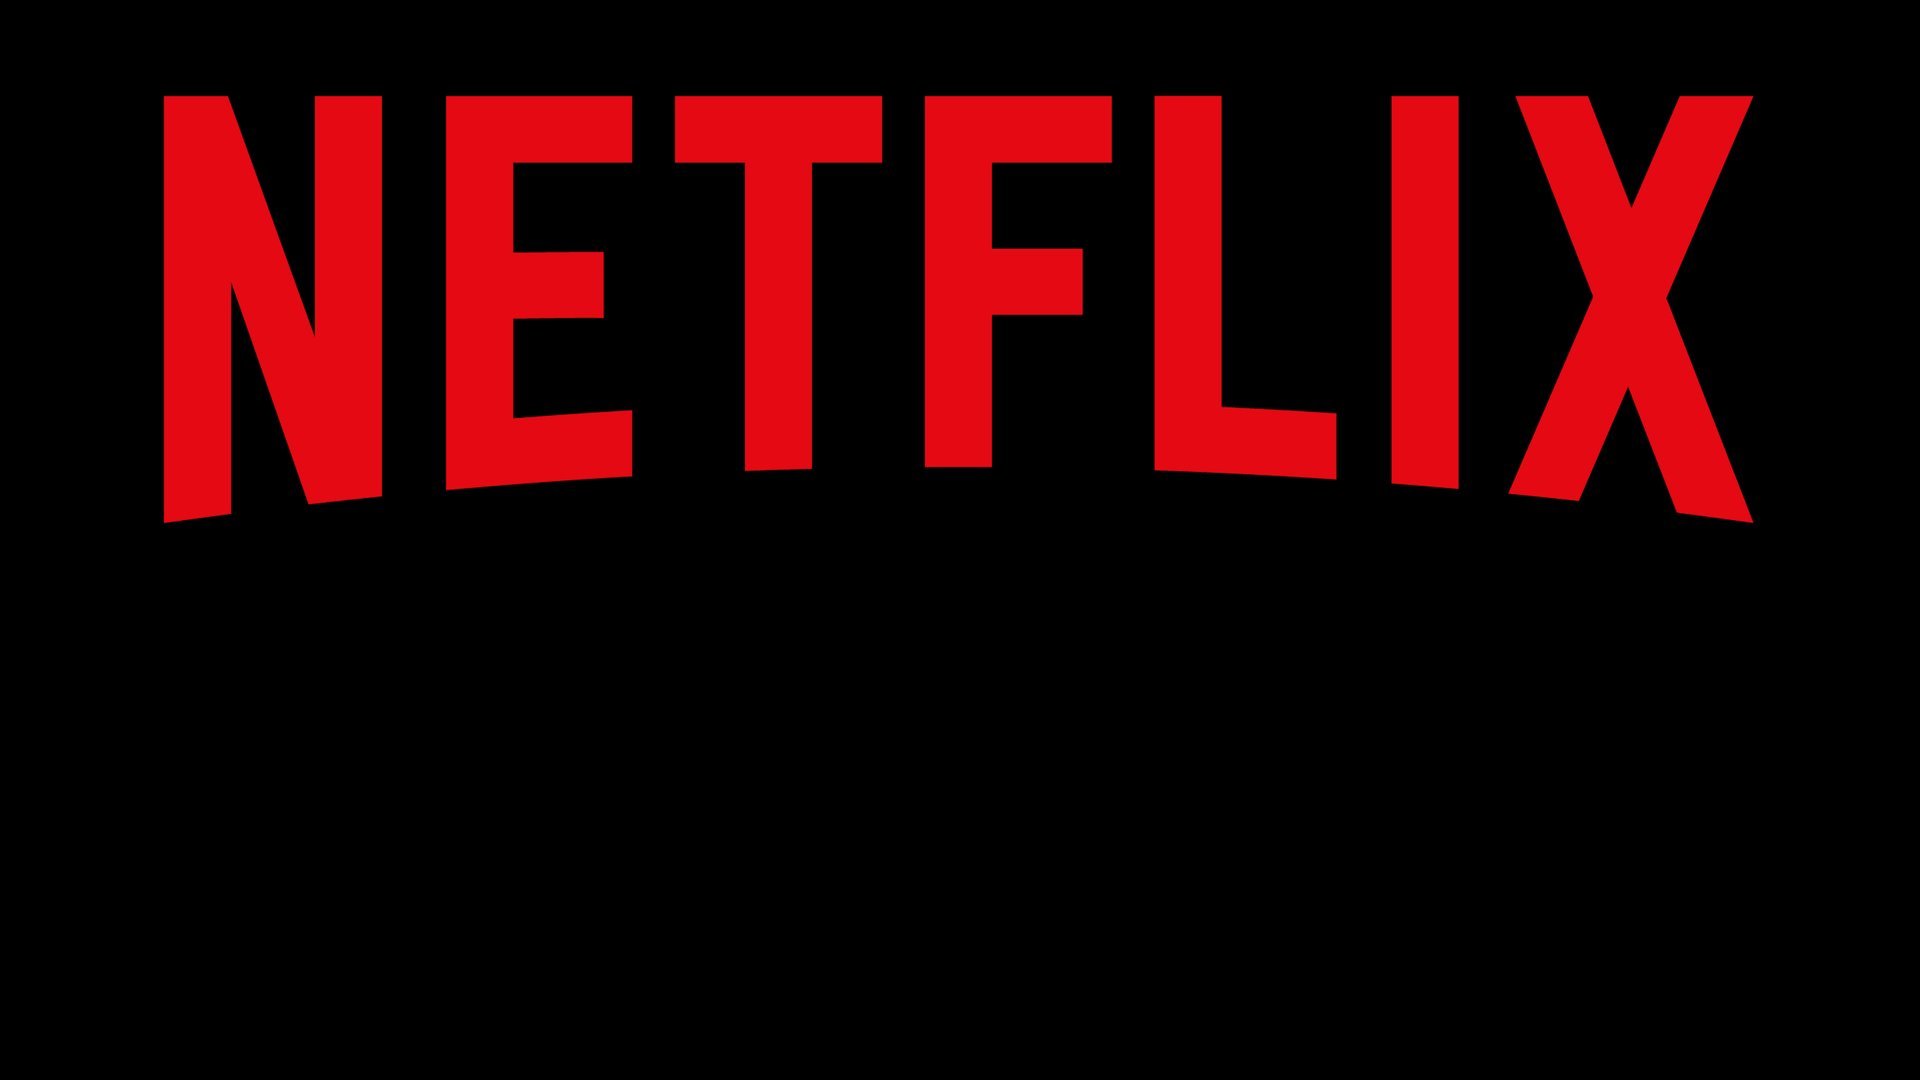 Netflix-Account teilen: Wann ist es erlaubt und wie funktioniert's?